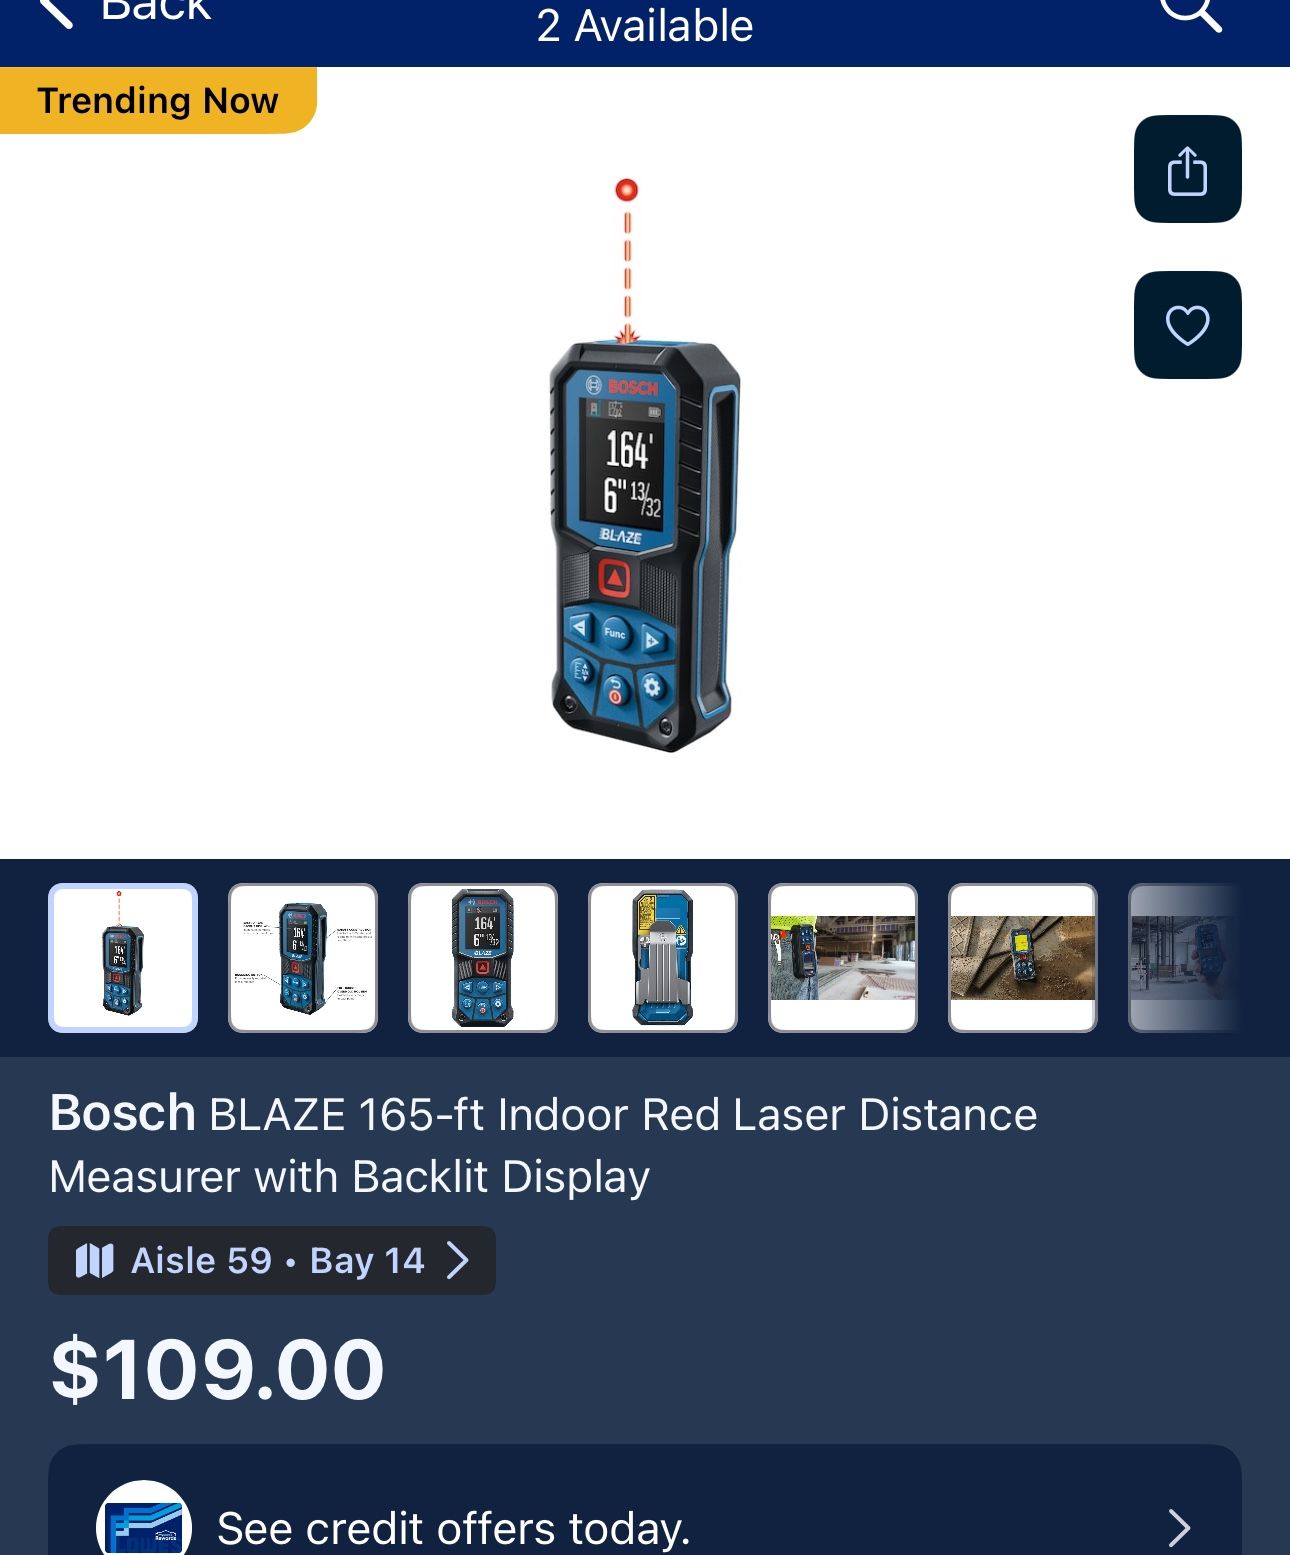 Bosch BLAZE 165-ft Indoor Red Laser Distance Measurer with Backlit Display